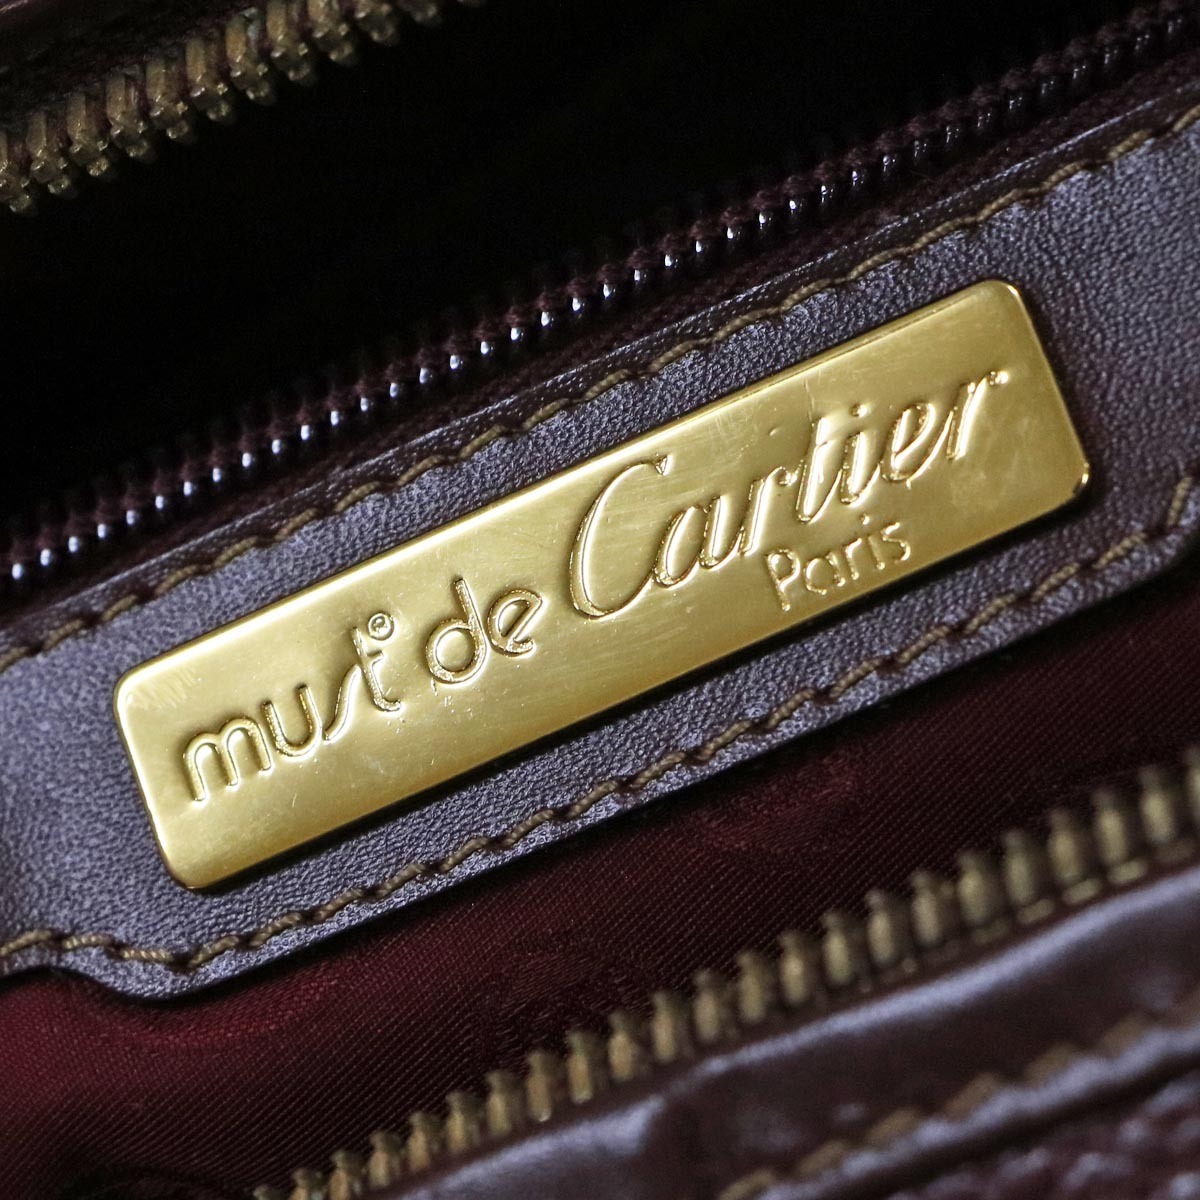 本物 美品 カルティエ 最高級マストグレインレザー鍵付きメンズボストンバッグ 旅行鞄 トラベルバッグ ダッフルバッグ Cartier_画像8